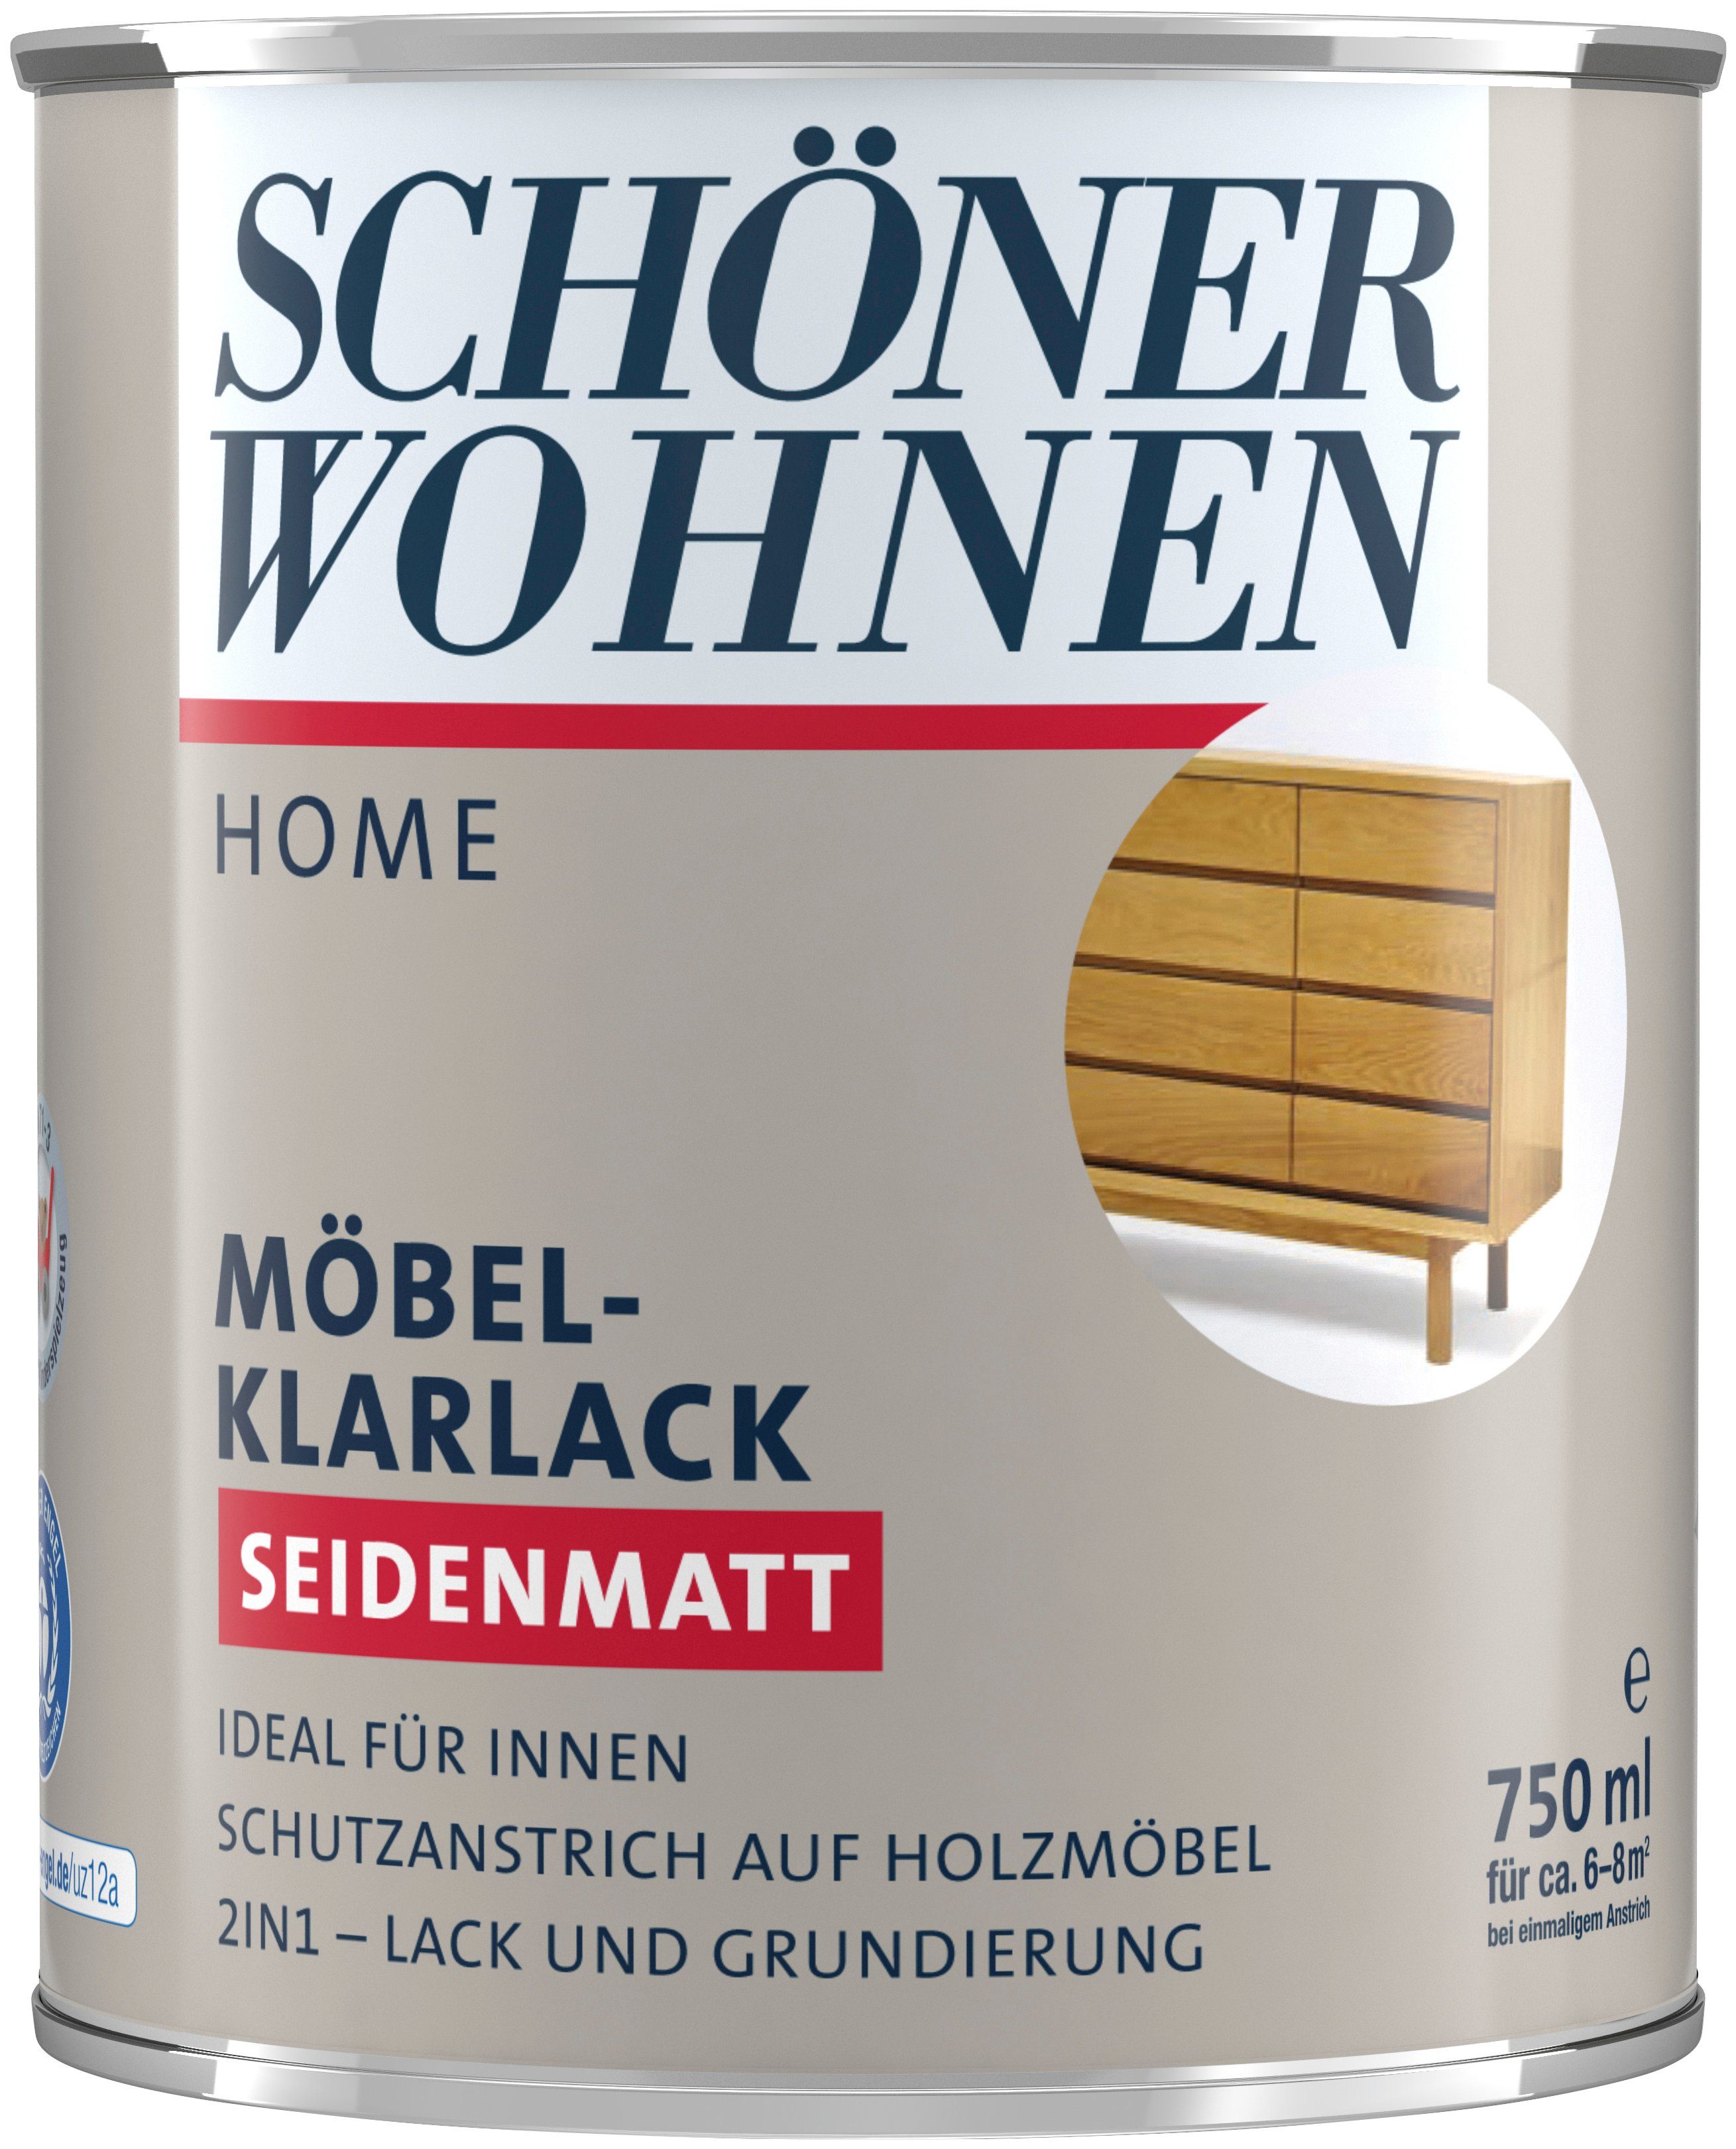 SCHÖNER WOHNEN FARBE Klarlack Home Möbel-Klarlack, 750 ml, farblos,  Schutzanstrich für Holzmöbel im Innenbereich